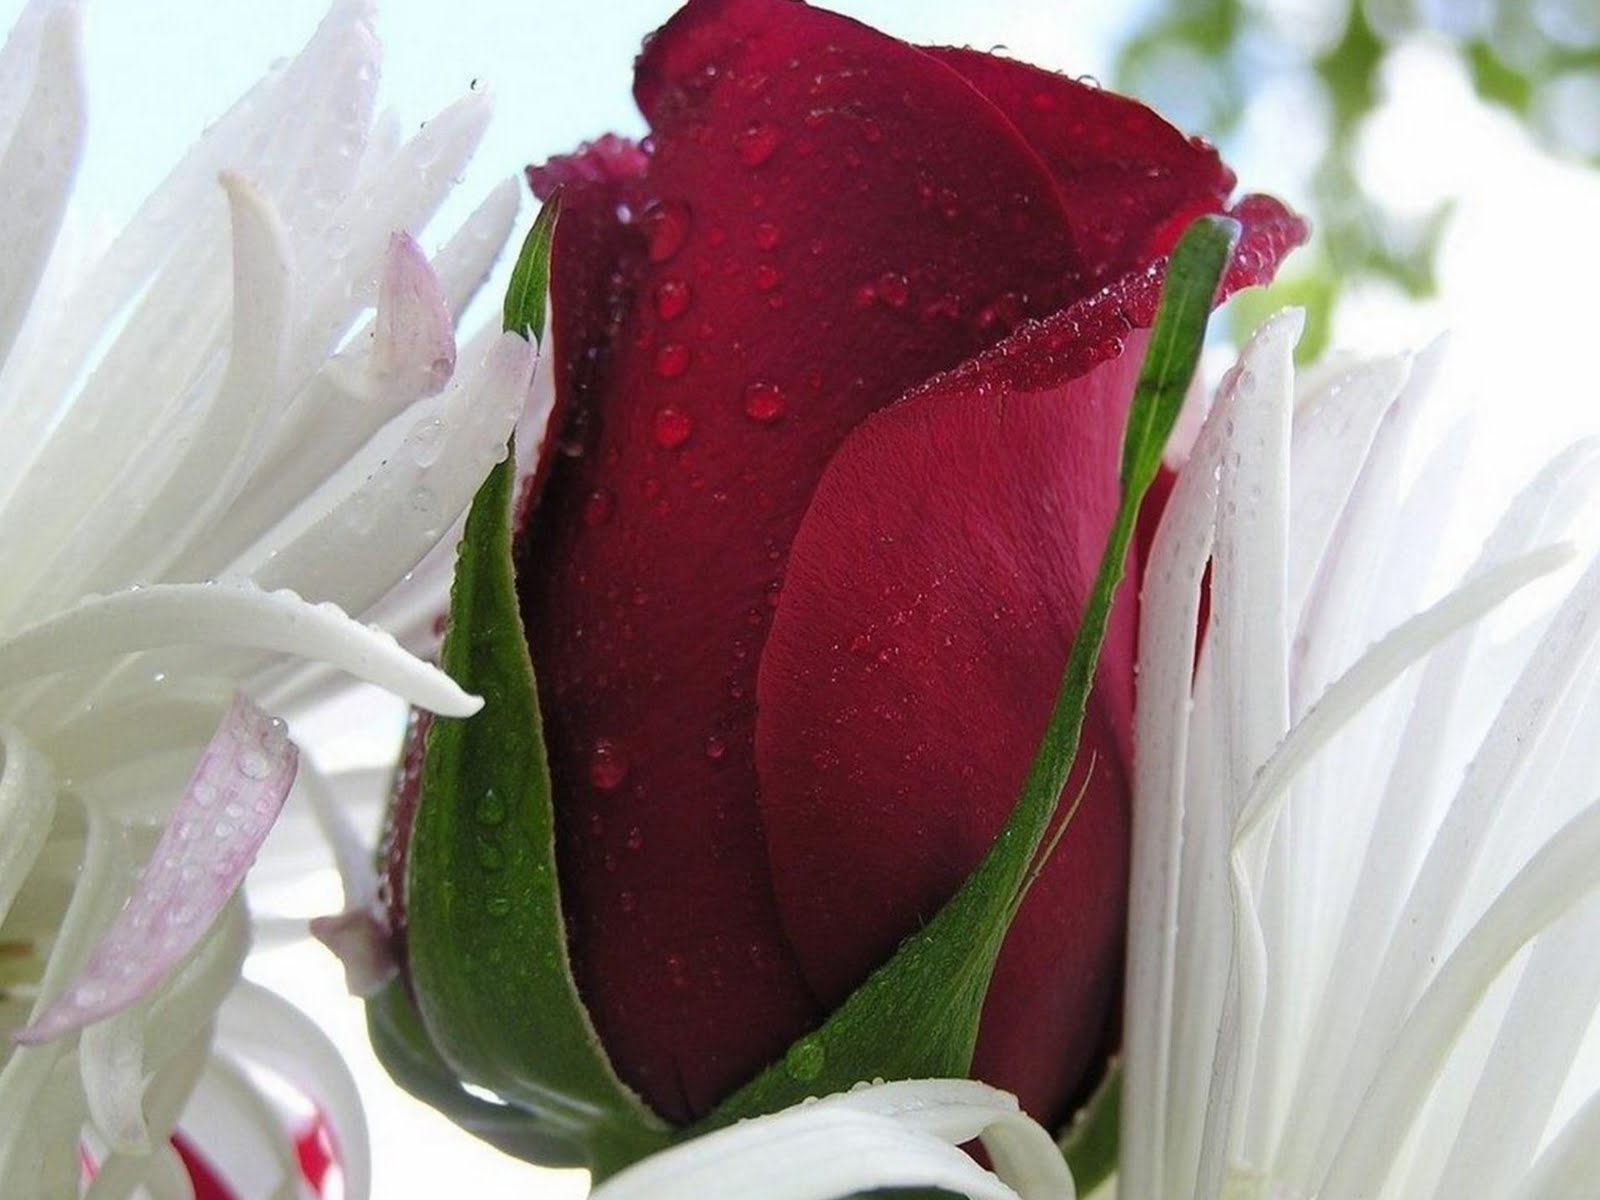 http://1.bp.blogspot.com/-vxCoCc0e0xs/TggvqqLdNTI/AAAAAAAAAvM/uLr9Y256KFU/s1600/Red_rose_bud_-_Beautiful_flowers.jpg